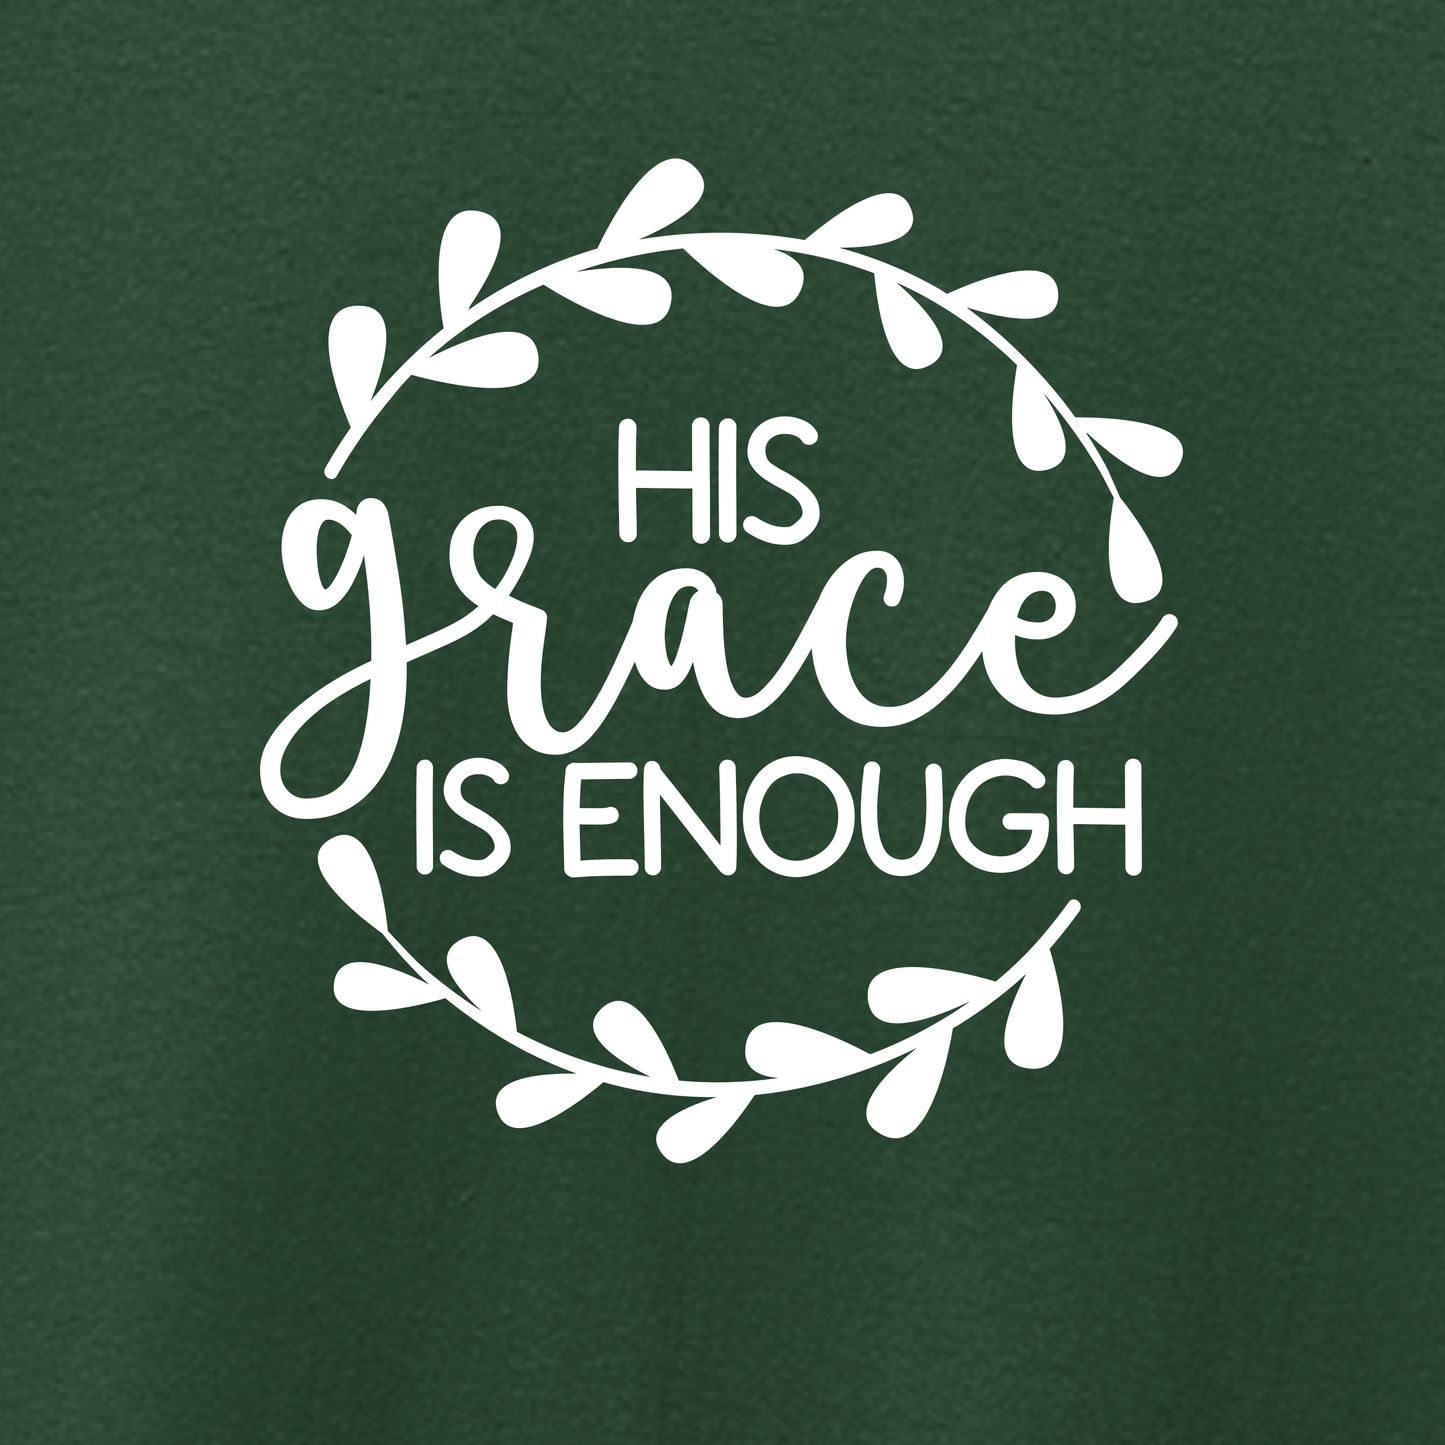 His Grace Tshirt